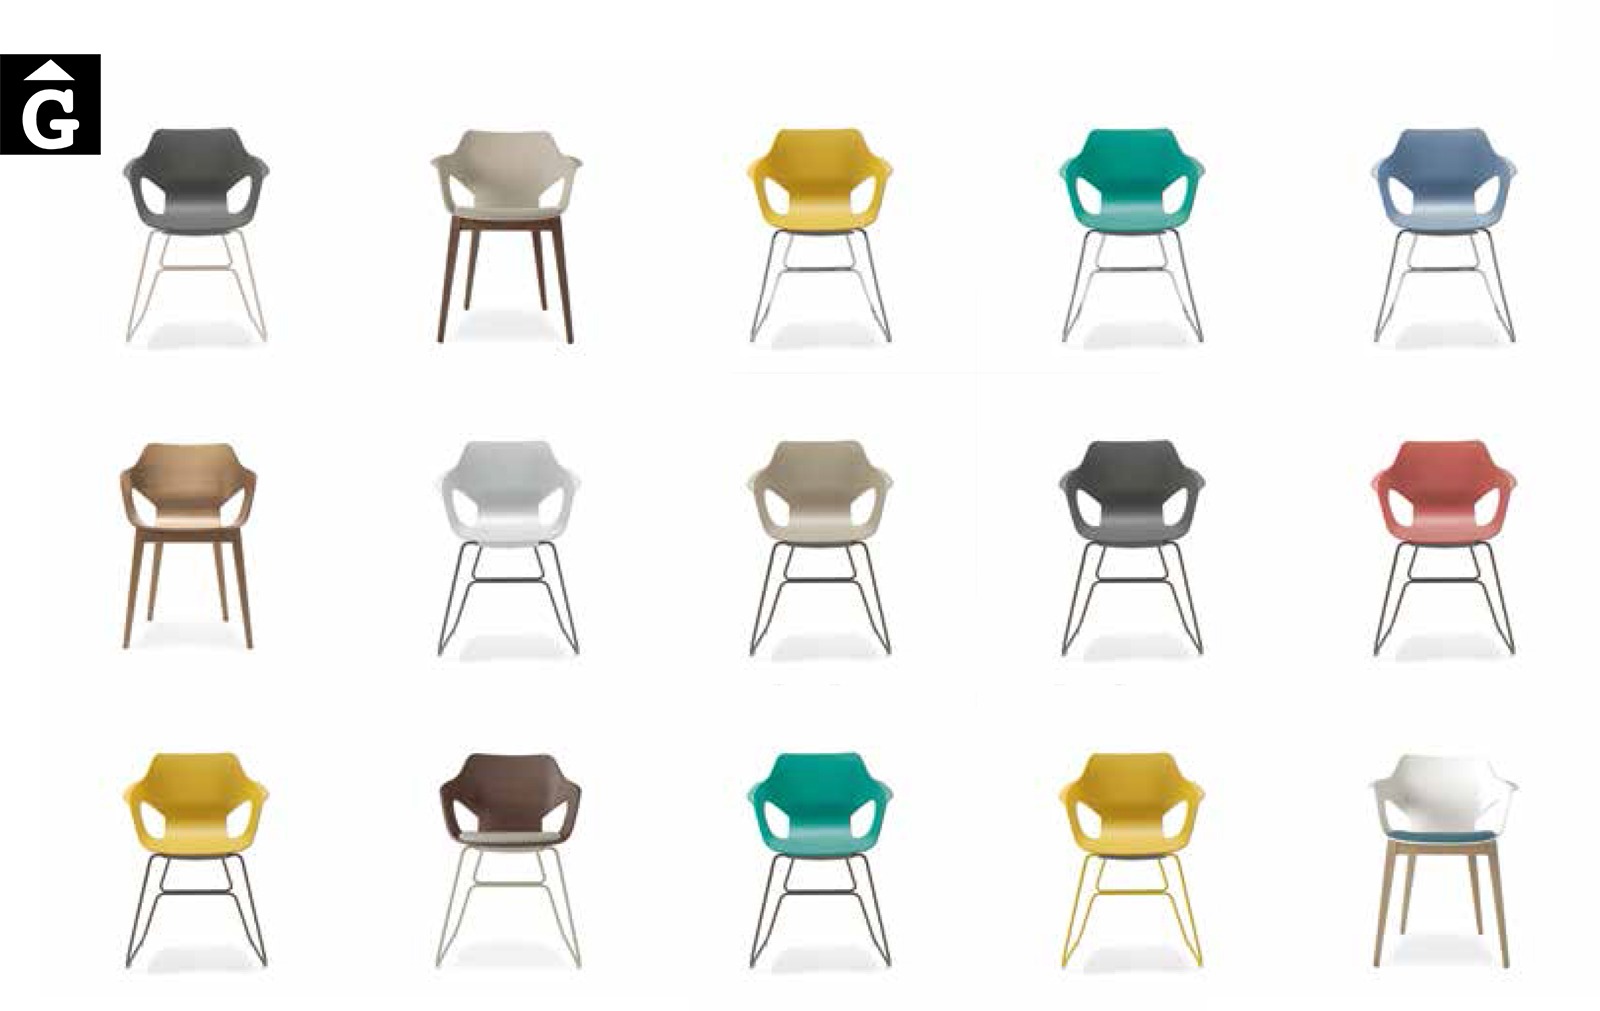 44 2 0 Loyra muebles by mobles Gifreu Idees per la llar moble de qualitat